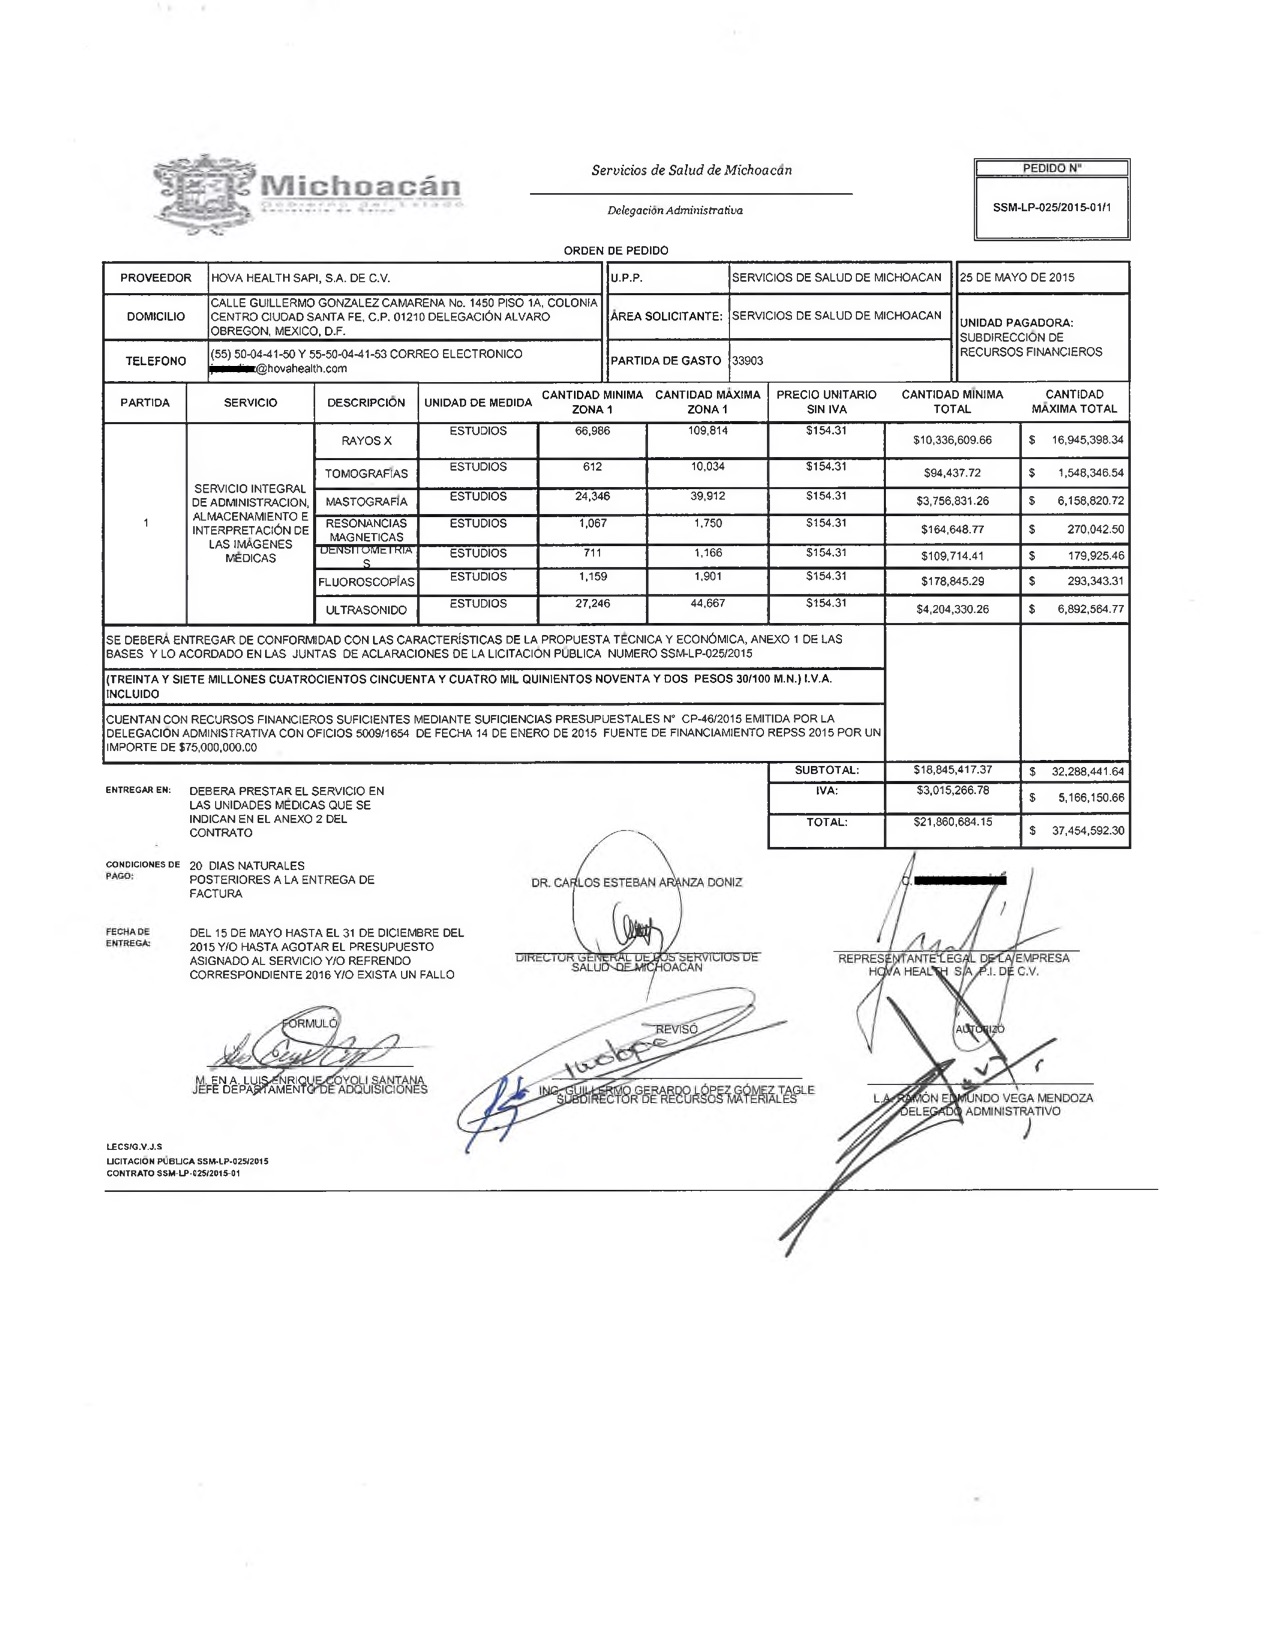 Página con las rúbricas del contrato SSM-LP-025/2015-01 entre Hova Health y la Secretaría de Salud de Michoacán. En noviembre, este contrato tuvo una ampliación de 15 por ciento.